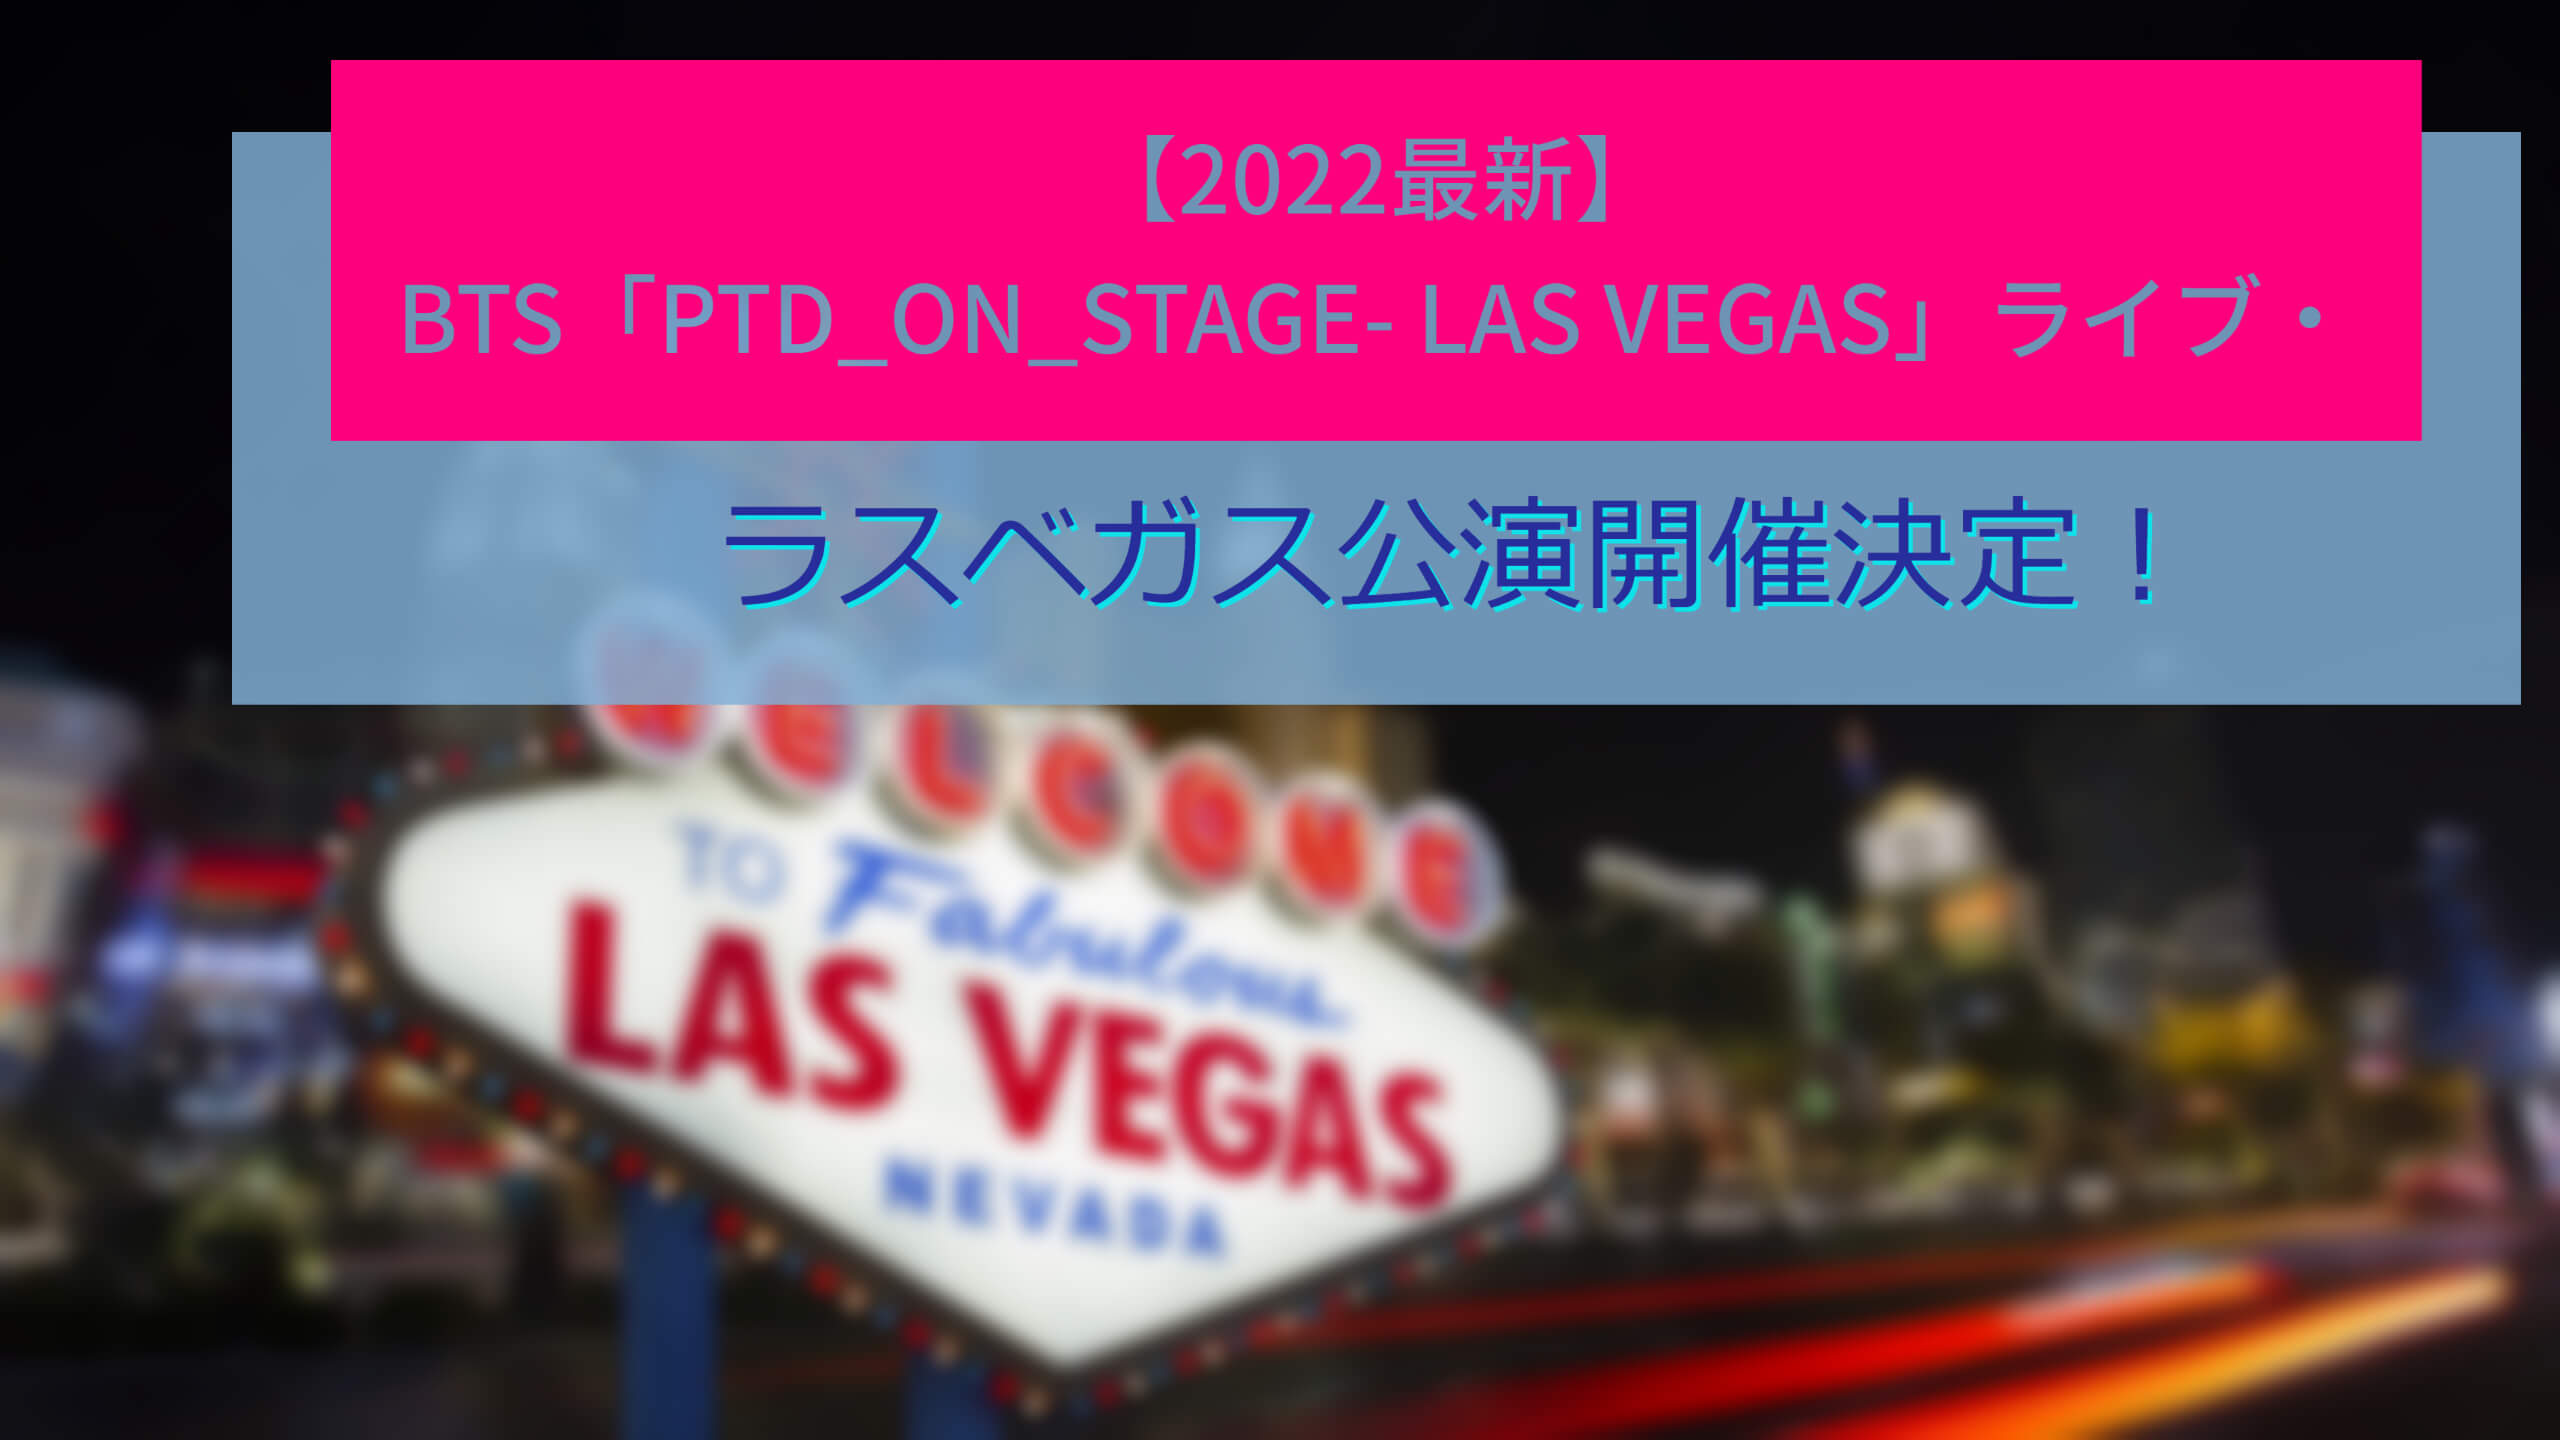 2022最新】BTS「PTD_ON_STAGE- LAS VEGAS」ラスベガス公演開催決定！ «